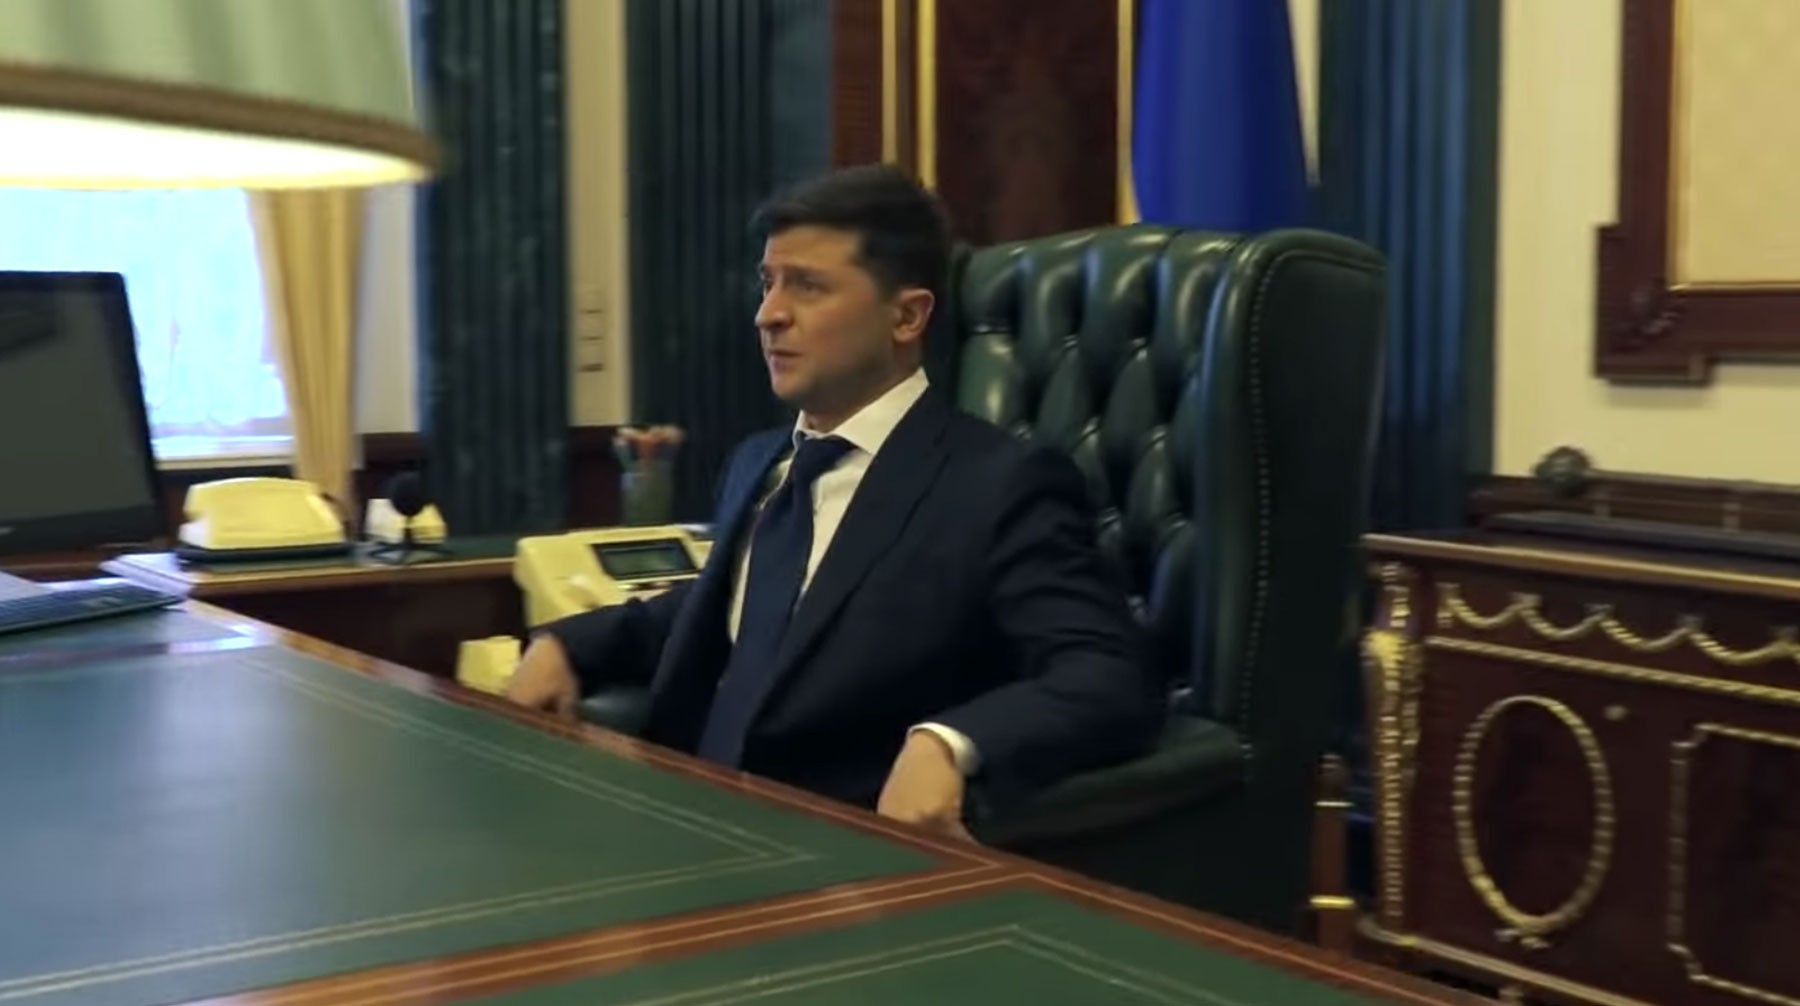 Dailystorm - Зеленскому не понравилось рабочее место президента Украины